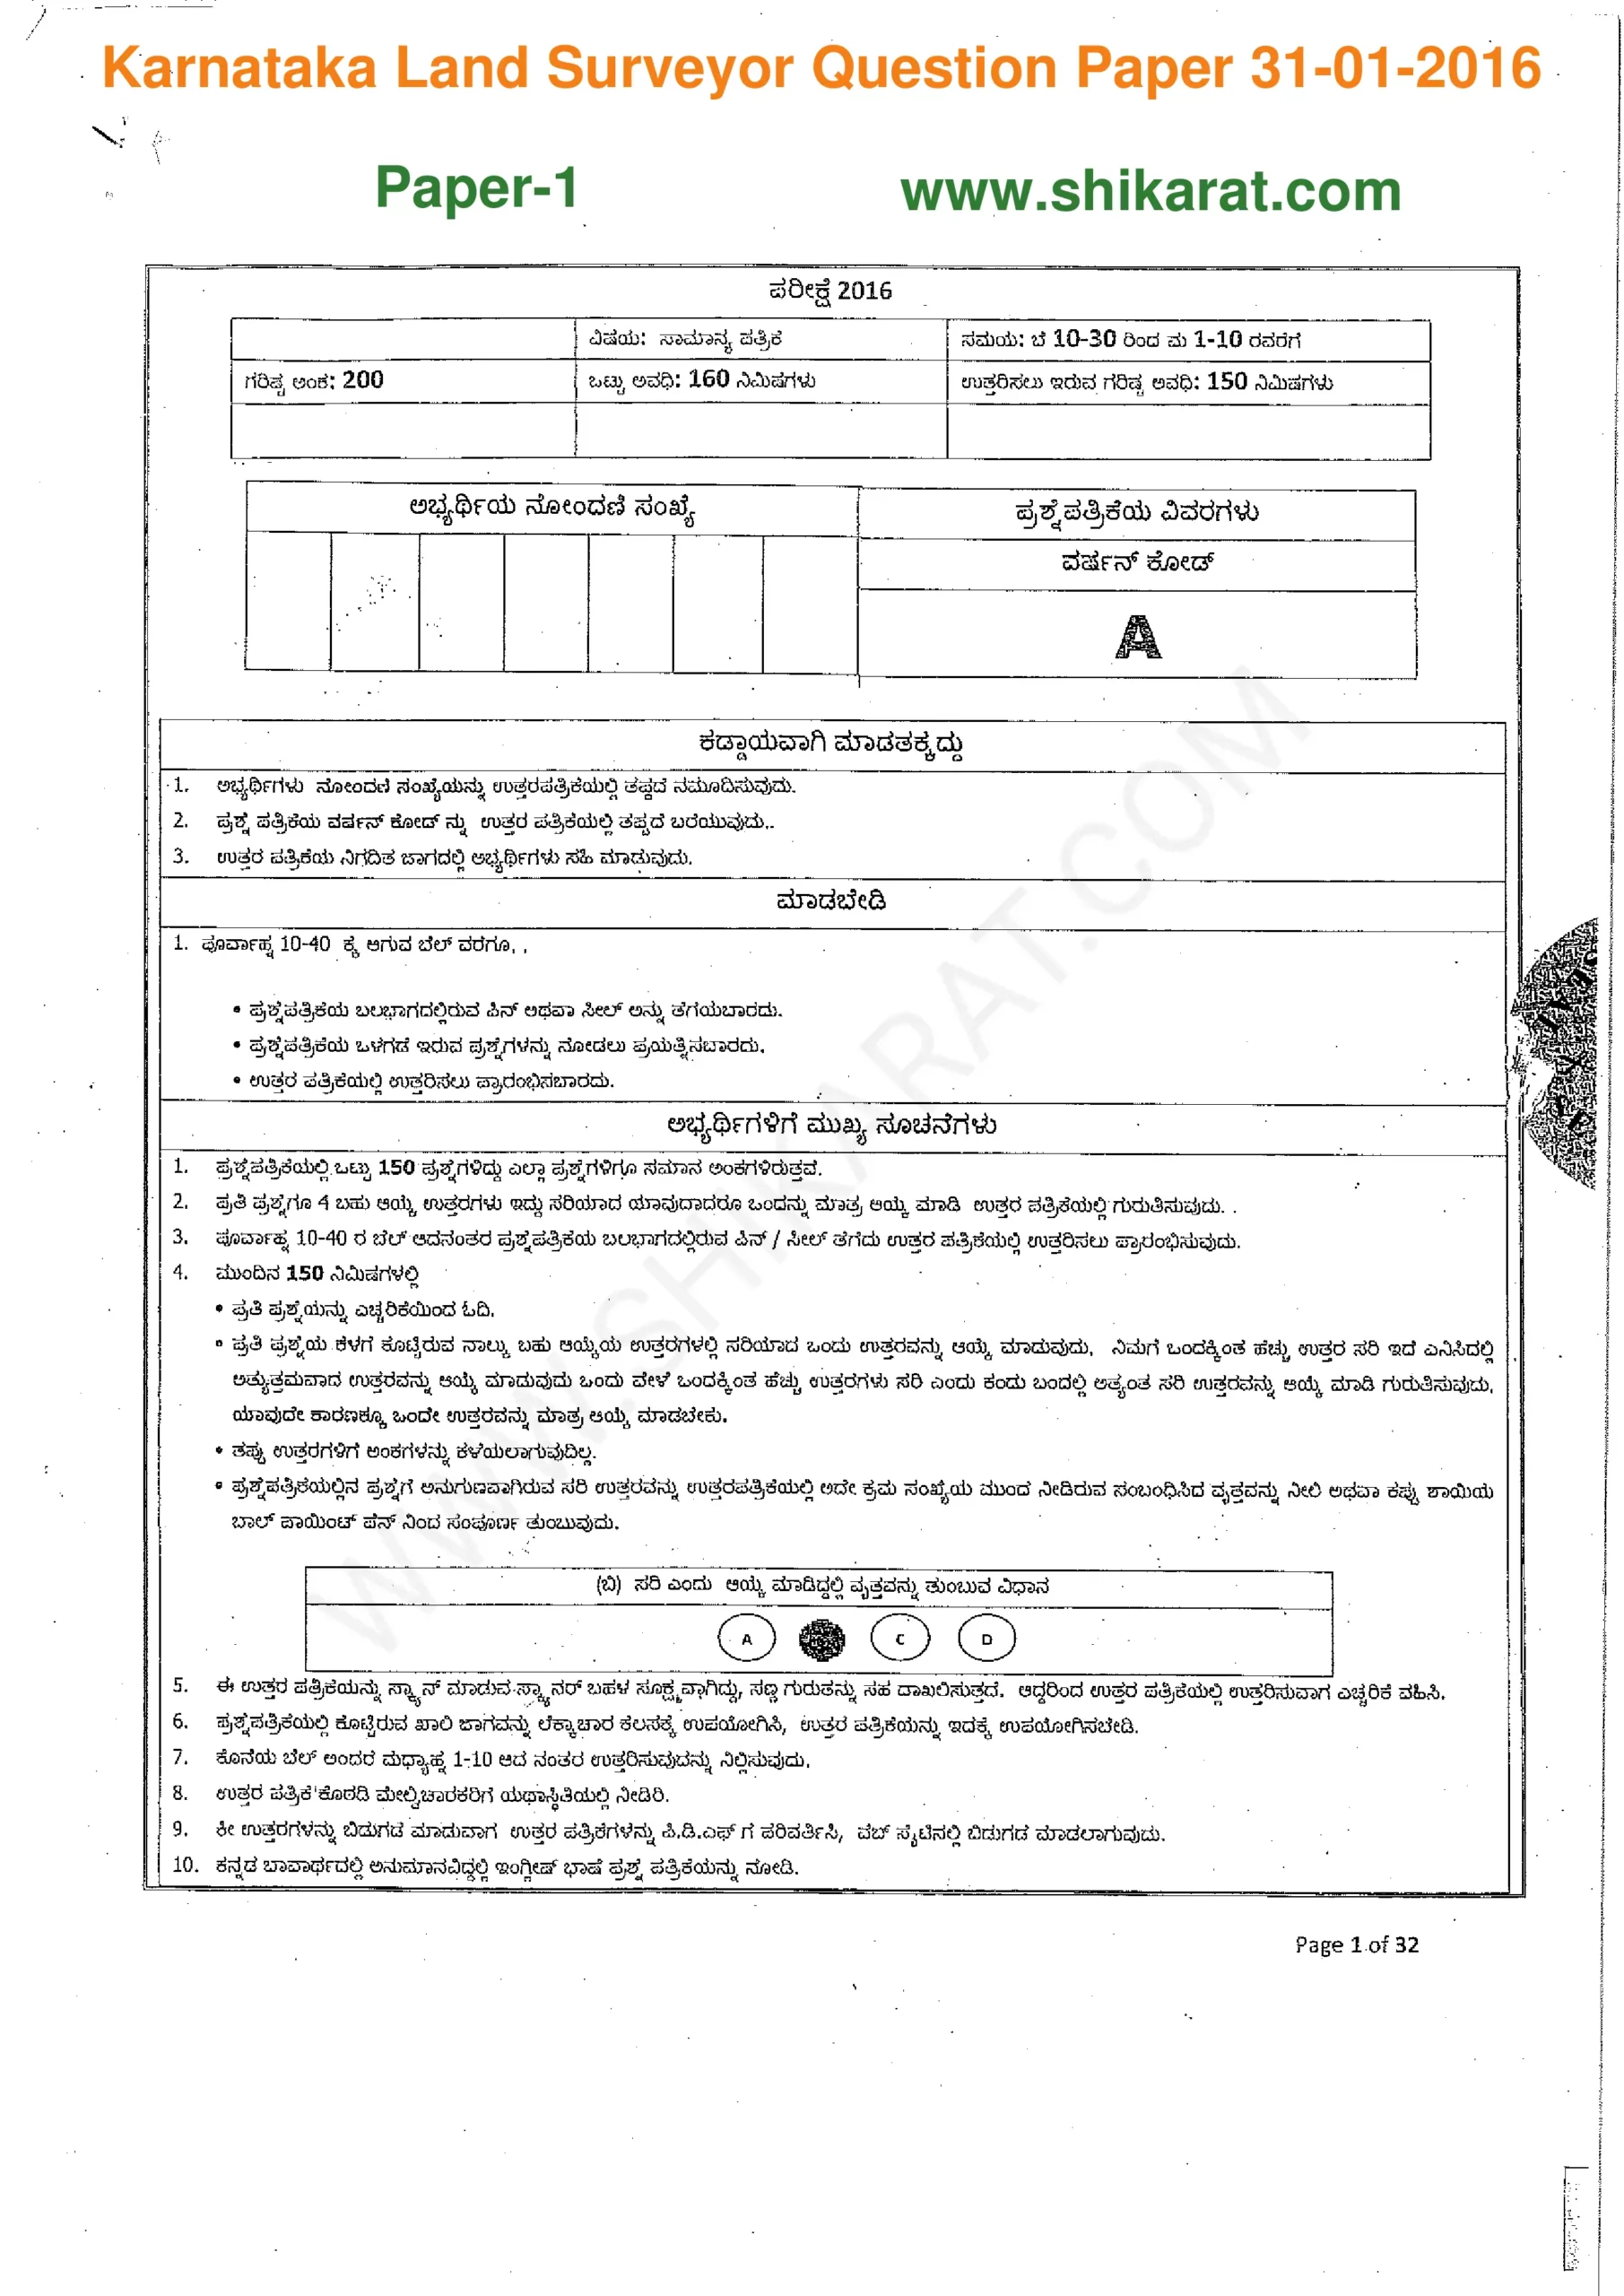 Karnataka Land Surveyor Paper-1 Question Papers PDF Download